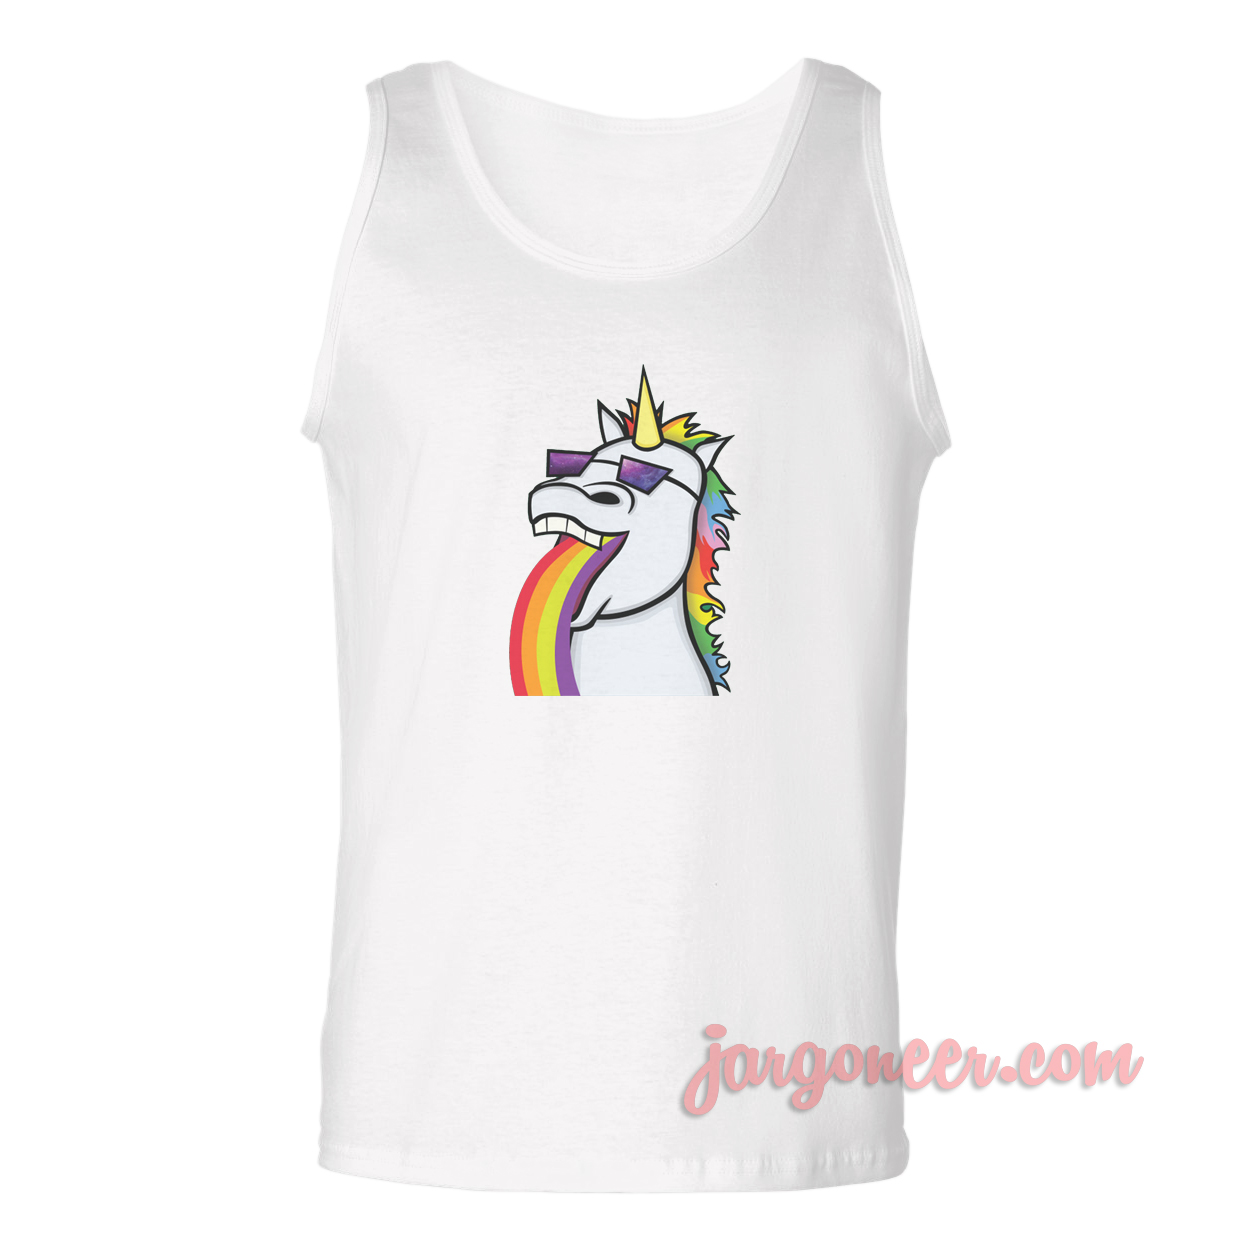 Vomit Unicorn - Shop Unique Graphic Cool Shirt Designs